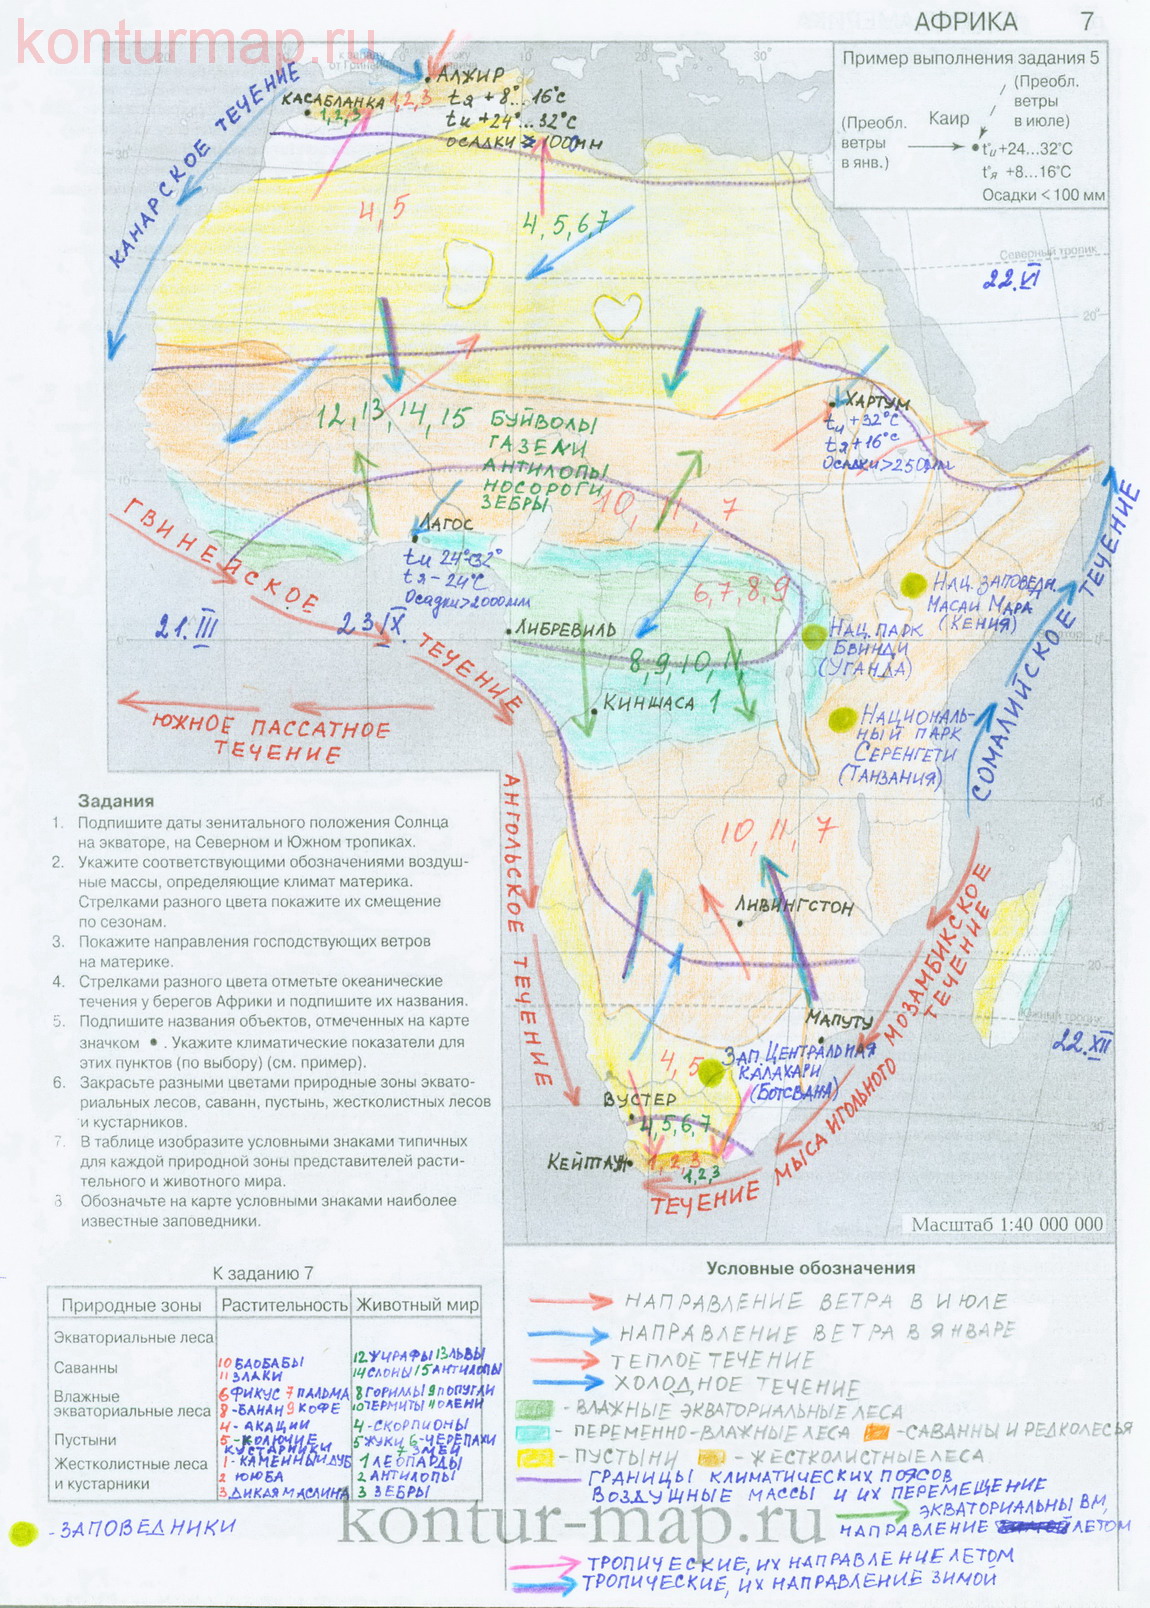 Гдз климат африки контурная карта 8 класс